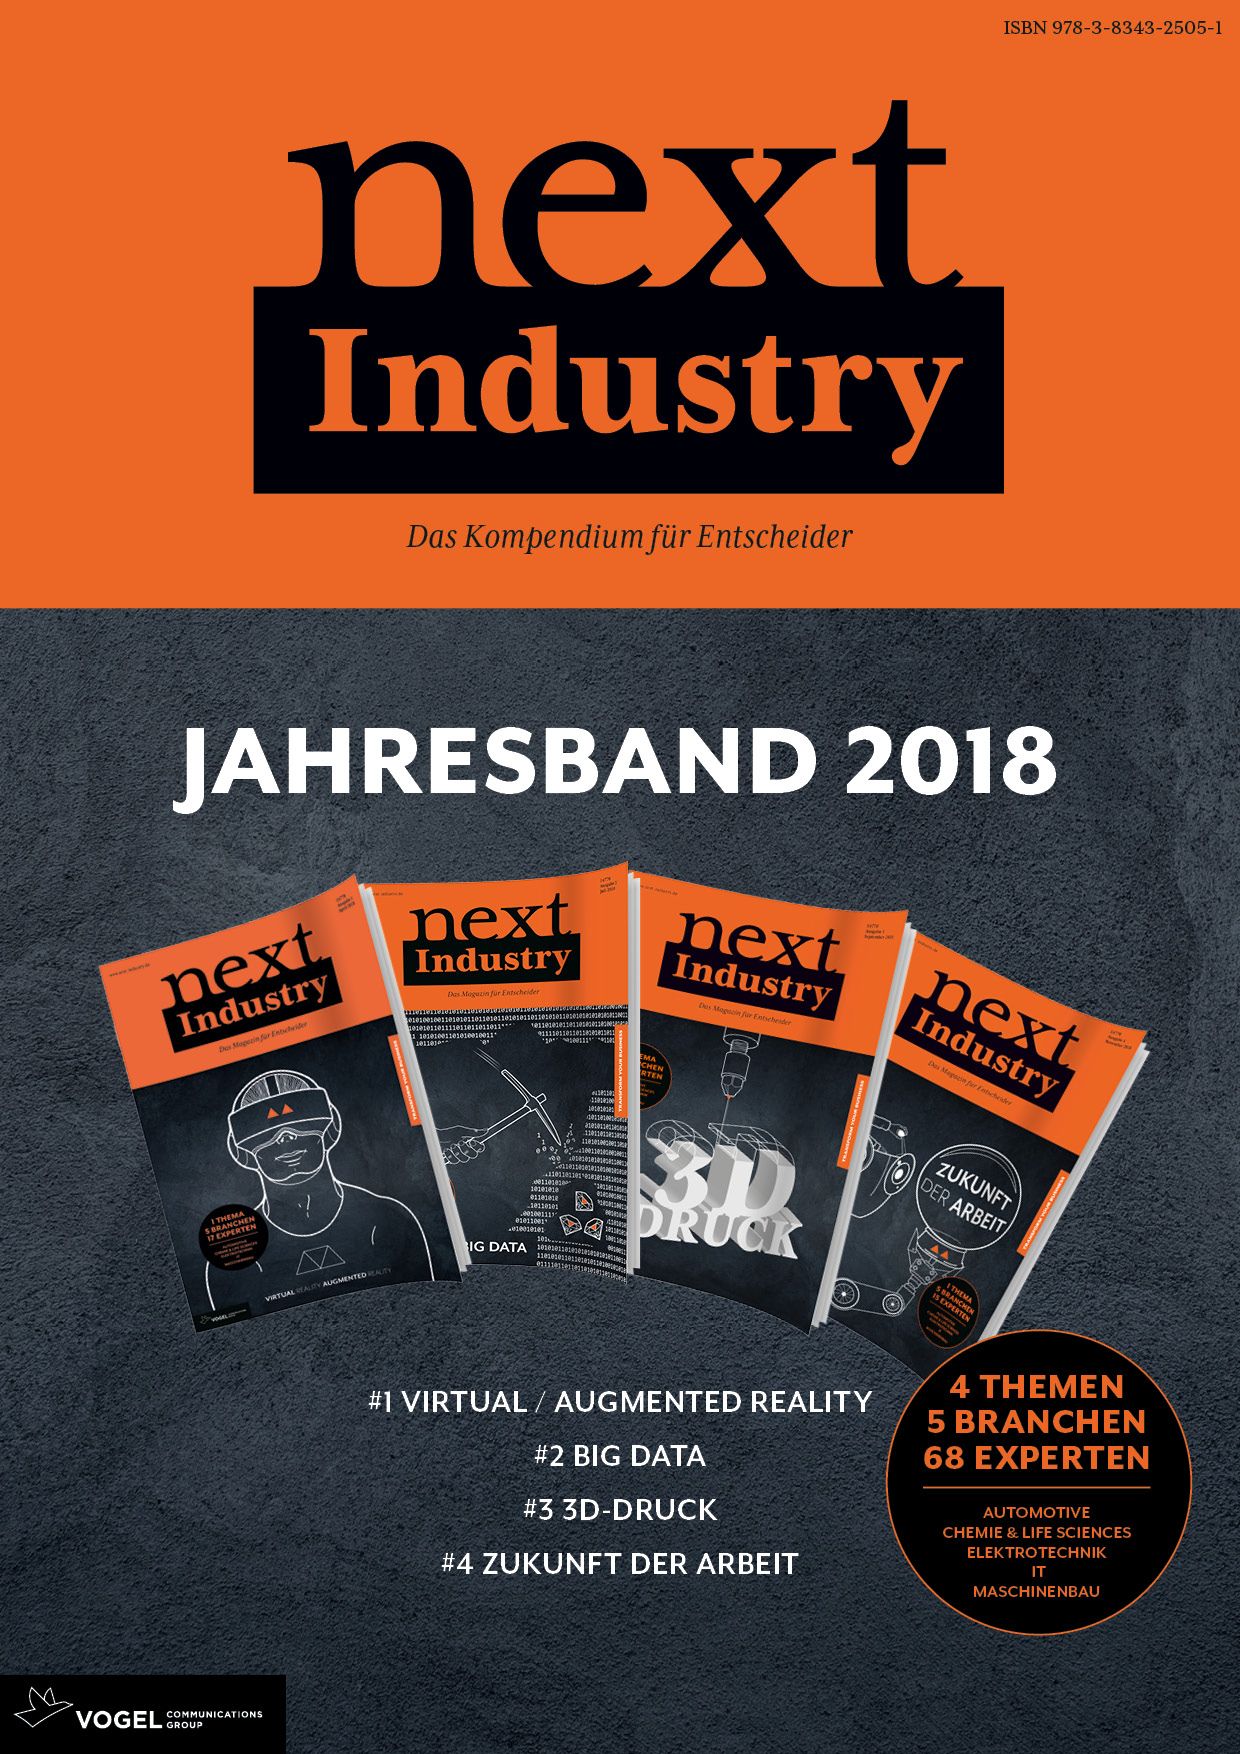 Next Industry - Jahresband 2018